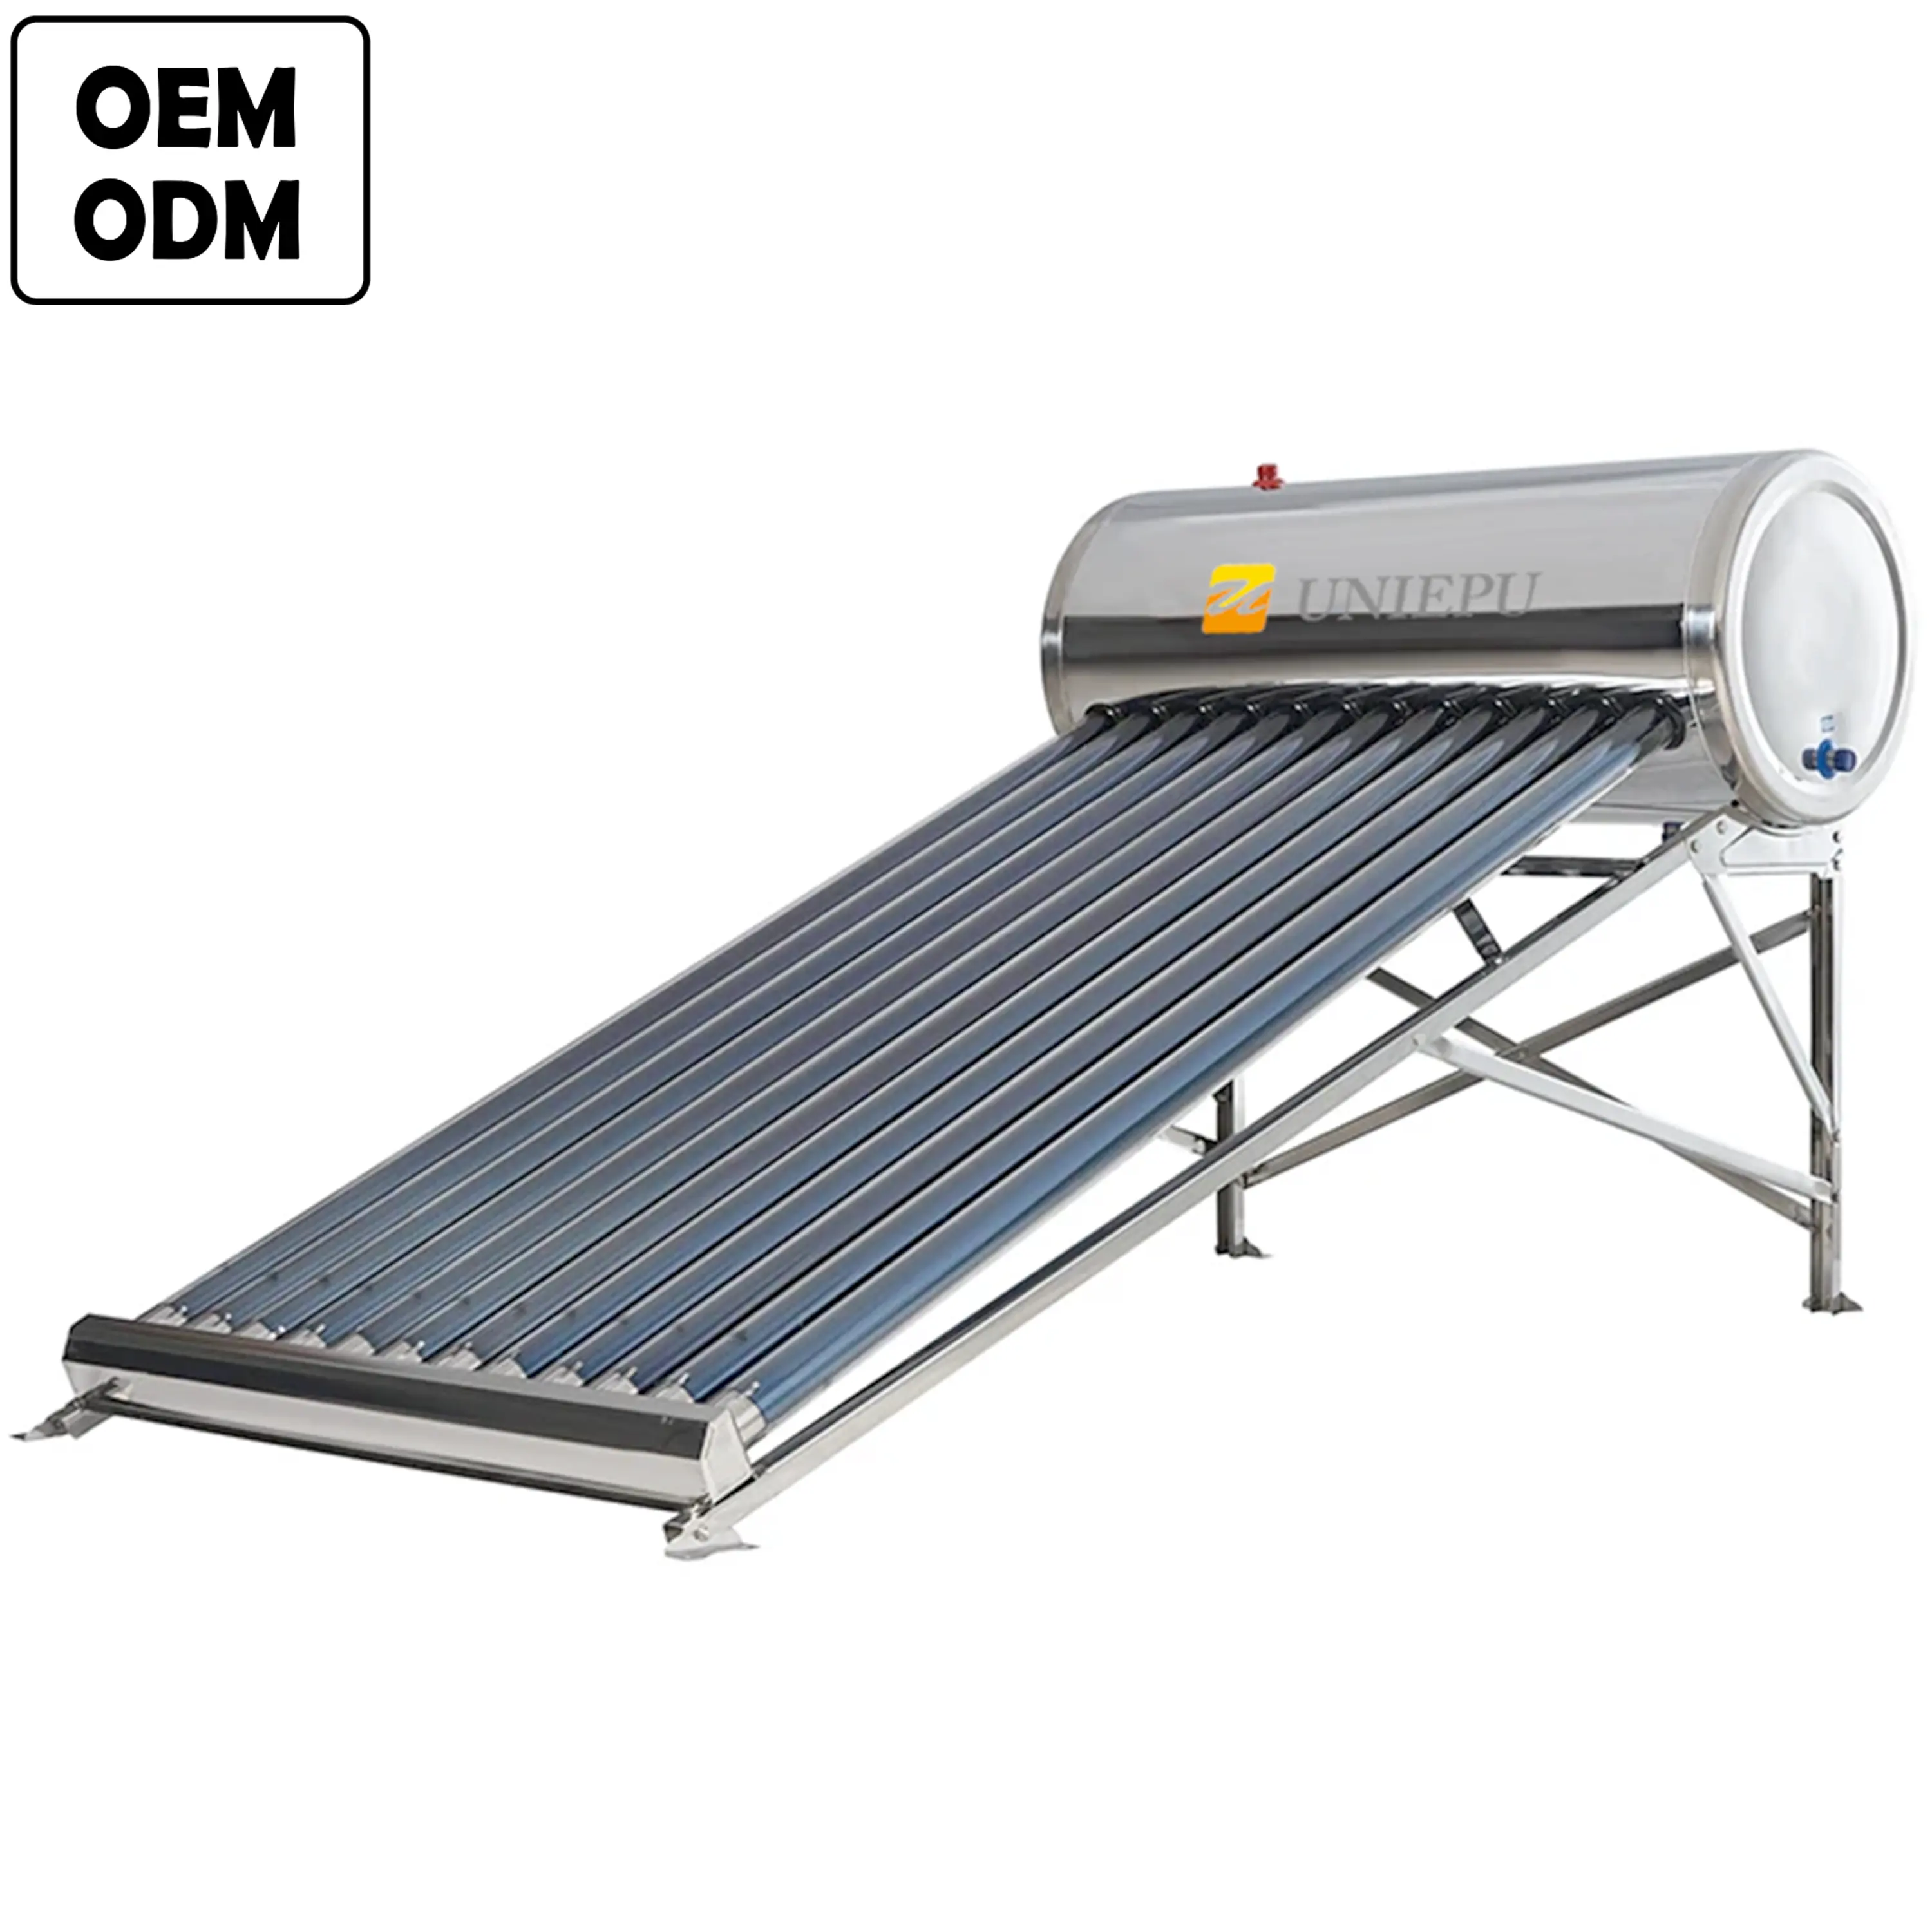 Einfach zu bedienende Pemanas-Wassererhitzer aus Edelstahl vakuumrohr Calentadores Solares de 12 Tubes ohne Druck-Solar-Wasserheizgerät